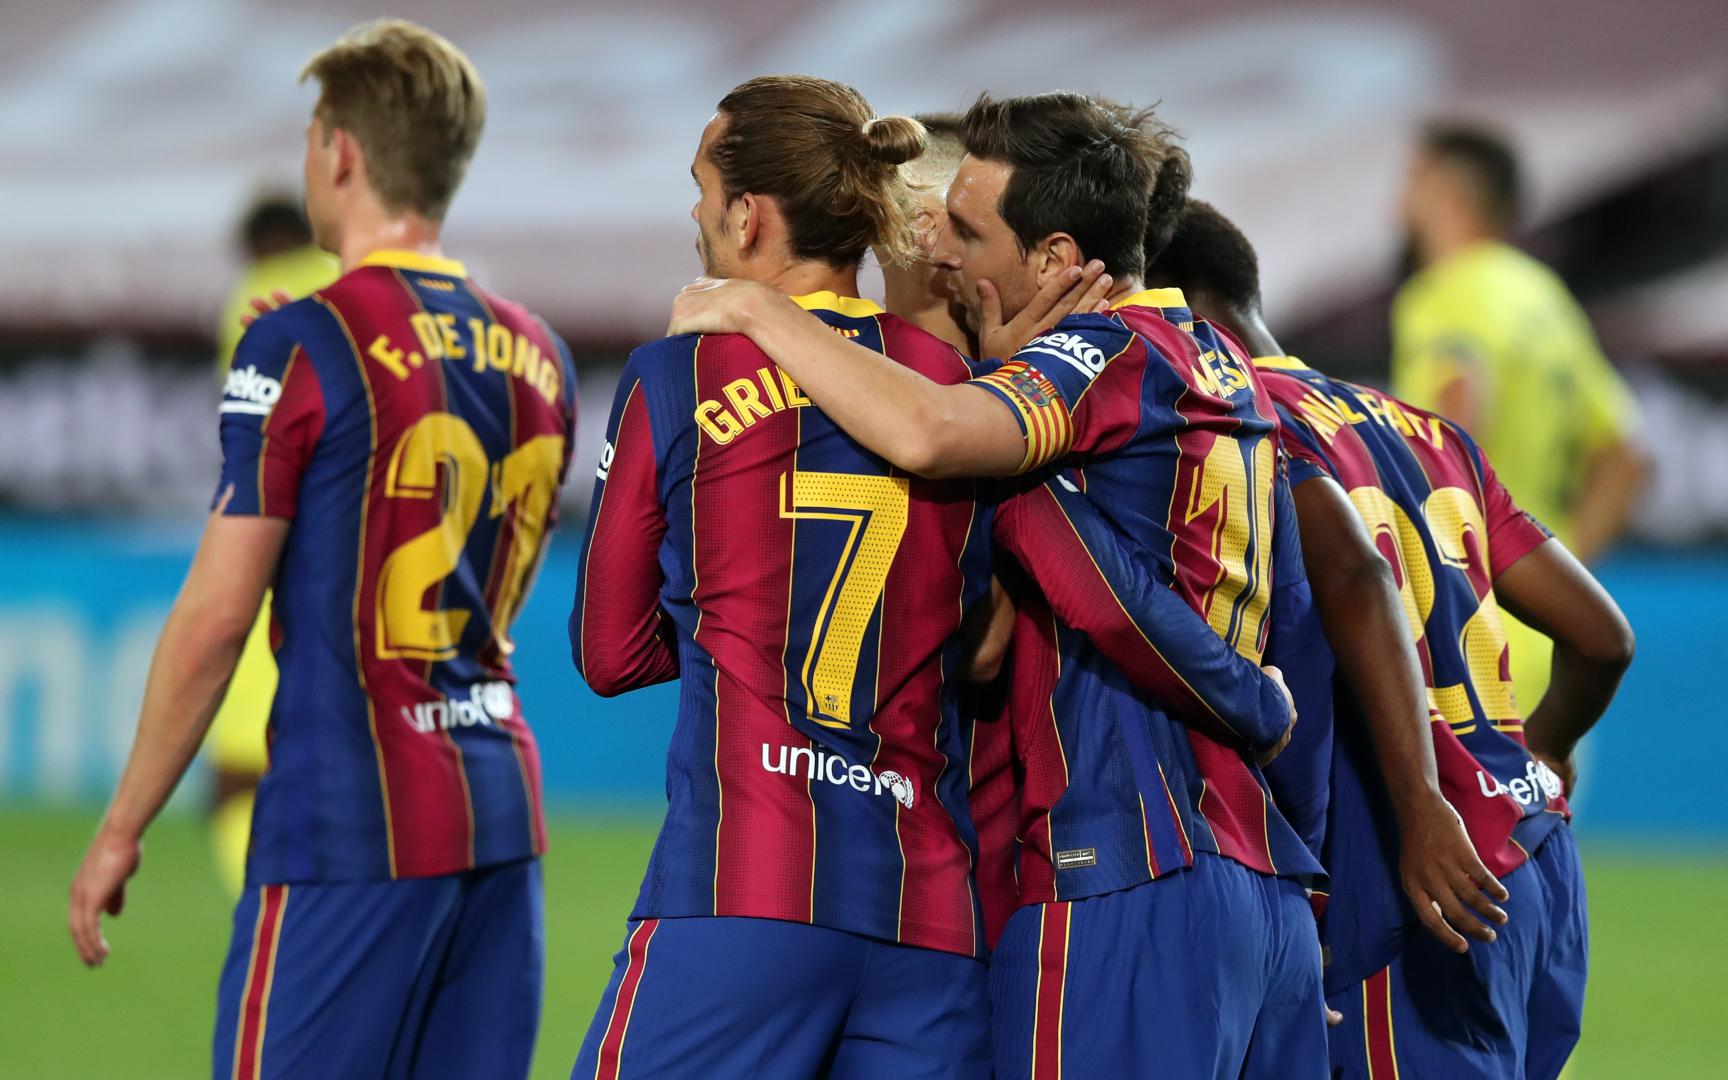 Detail Images Of Barcelona Soccer Team Nomer 29